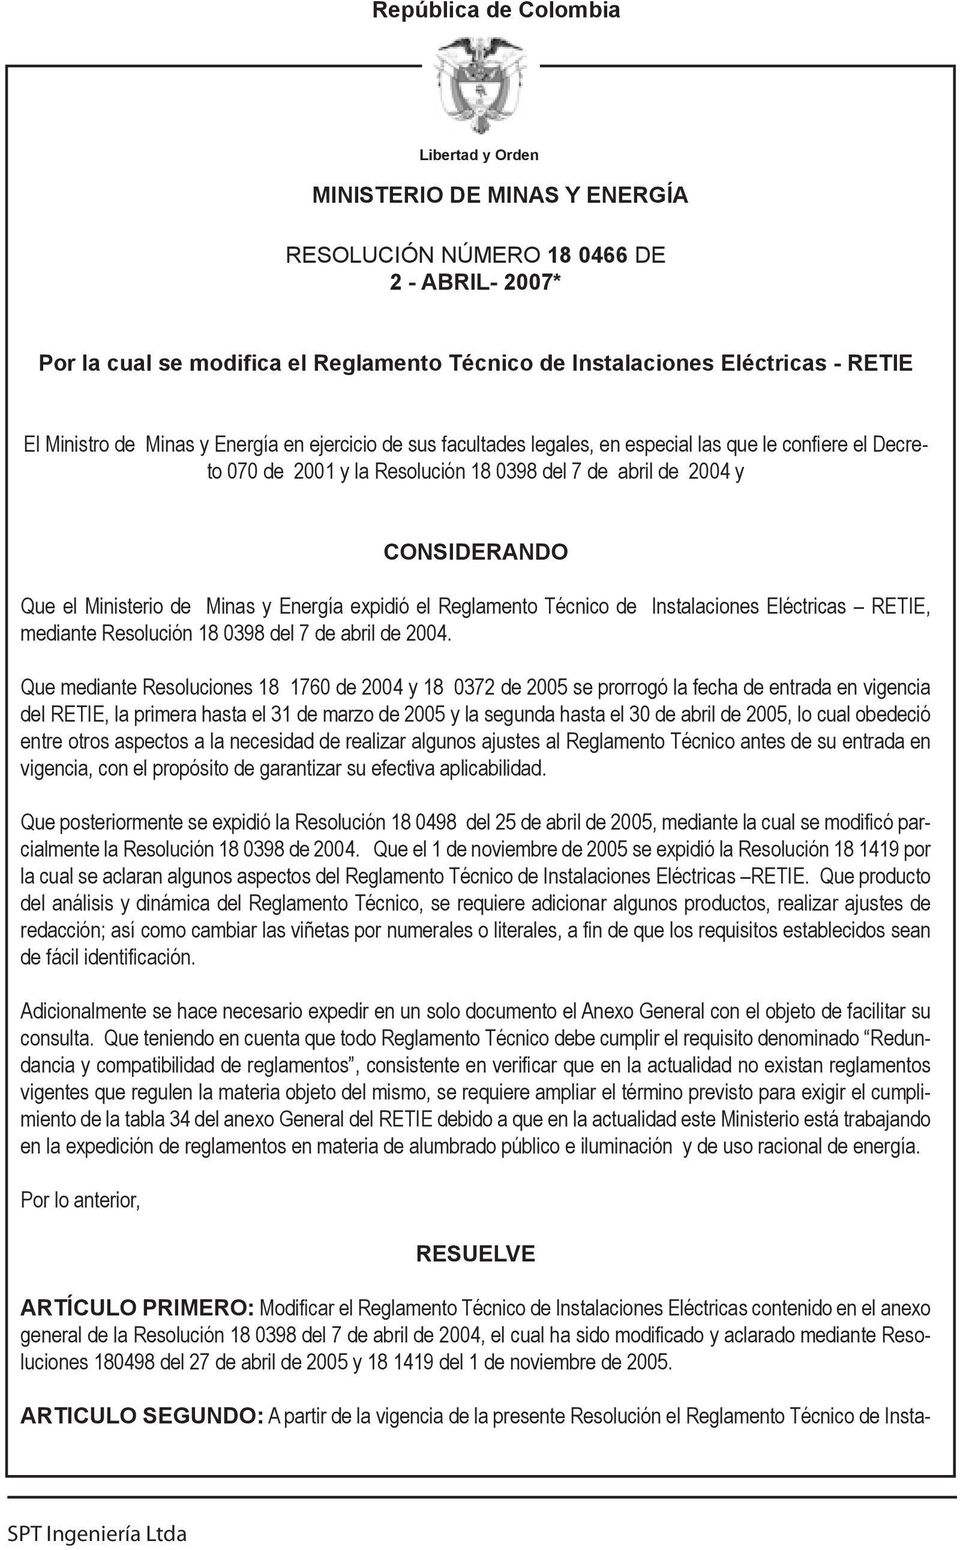 Ministerio de Minas y Energía expidió el Reglamento Técnico de Instalaciones Eléctricas RETIE, mediante Resolución 18 0398 del 7 de abril de 2004.